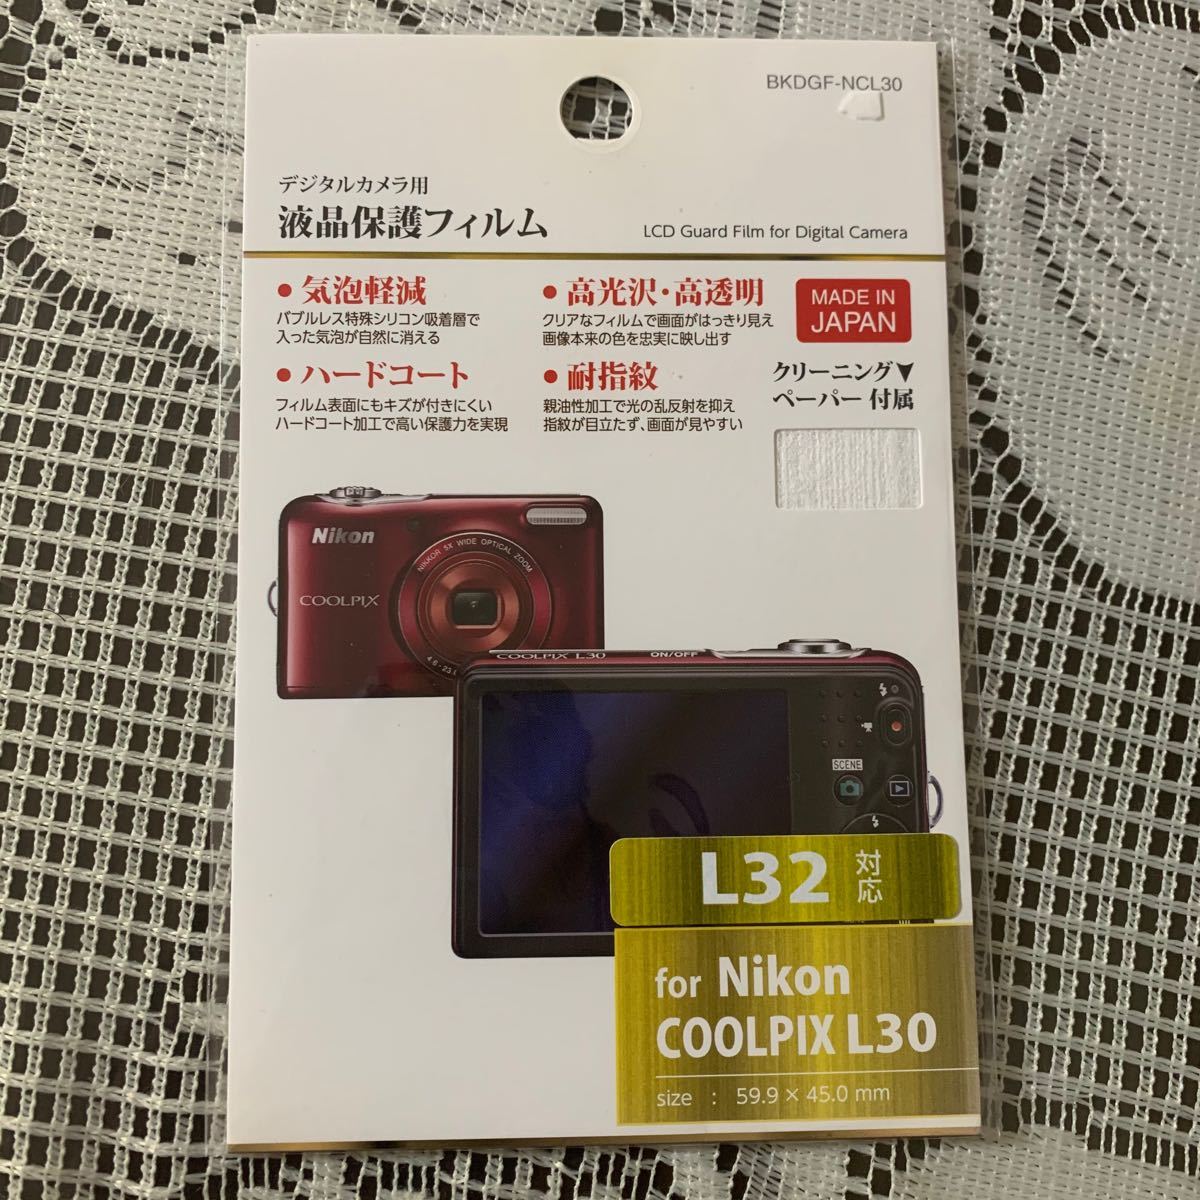 「ハクバ写真産業 液晶保護フィルム ニコン COOLPIX L30専用 BKDGF-NCL30」